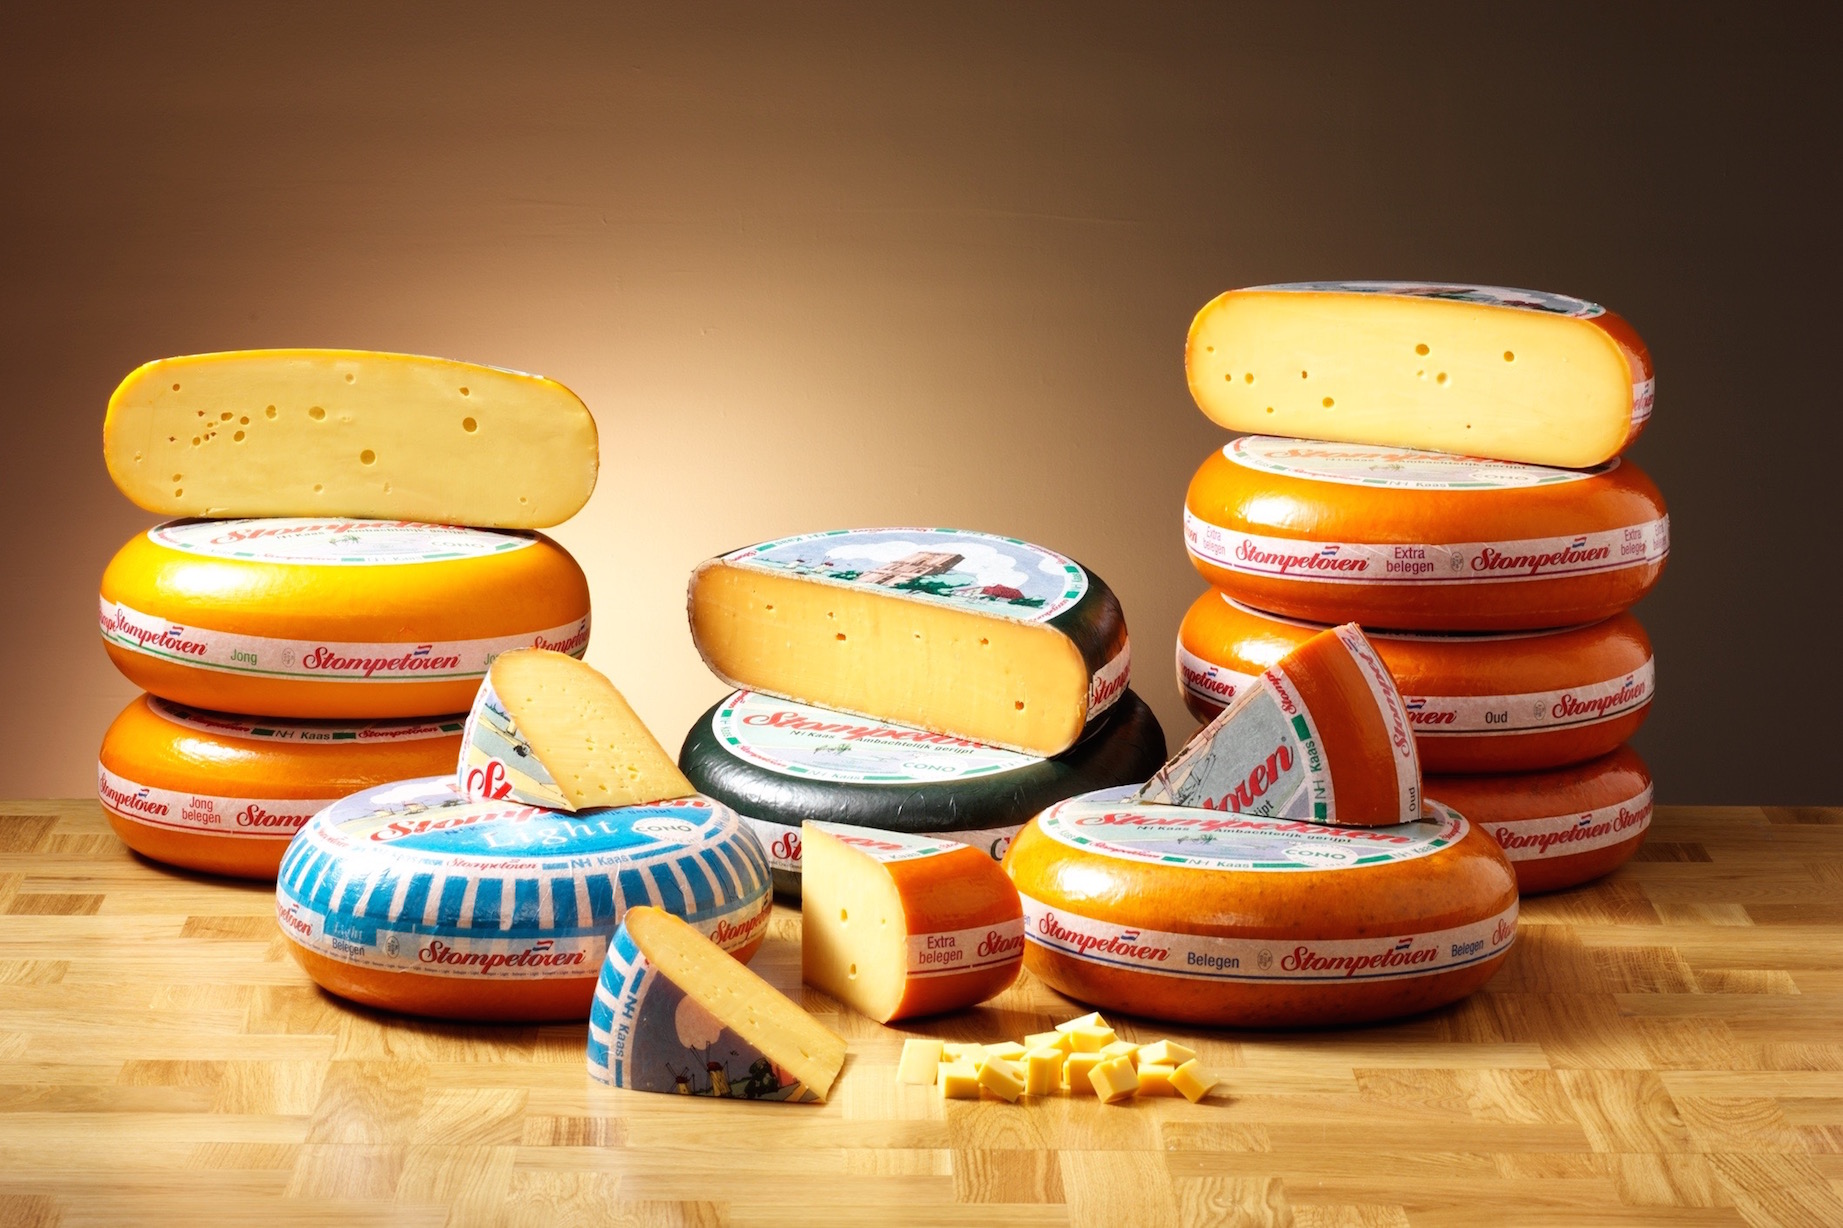 Stompetoren Cheese